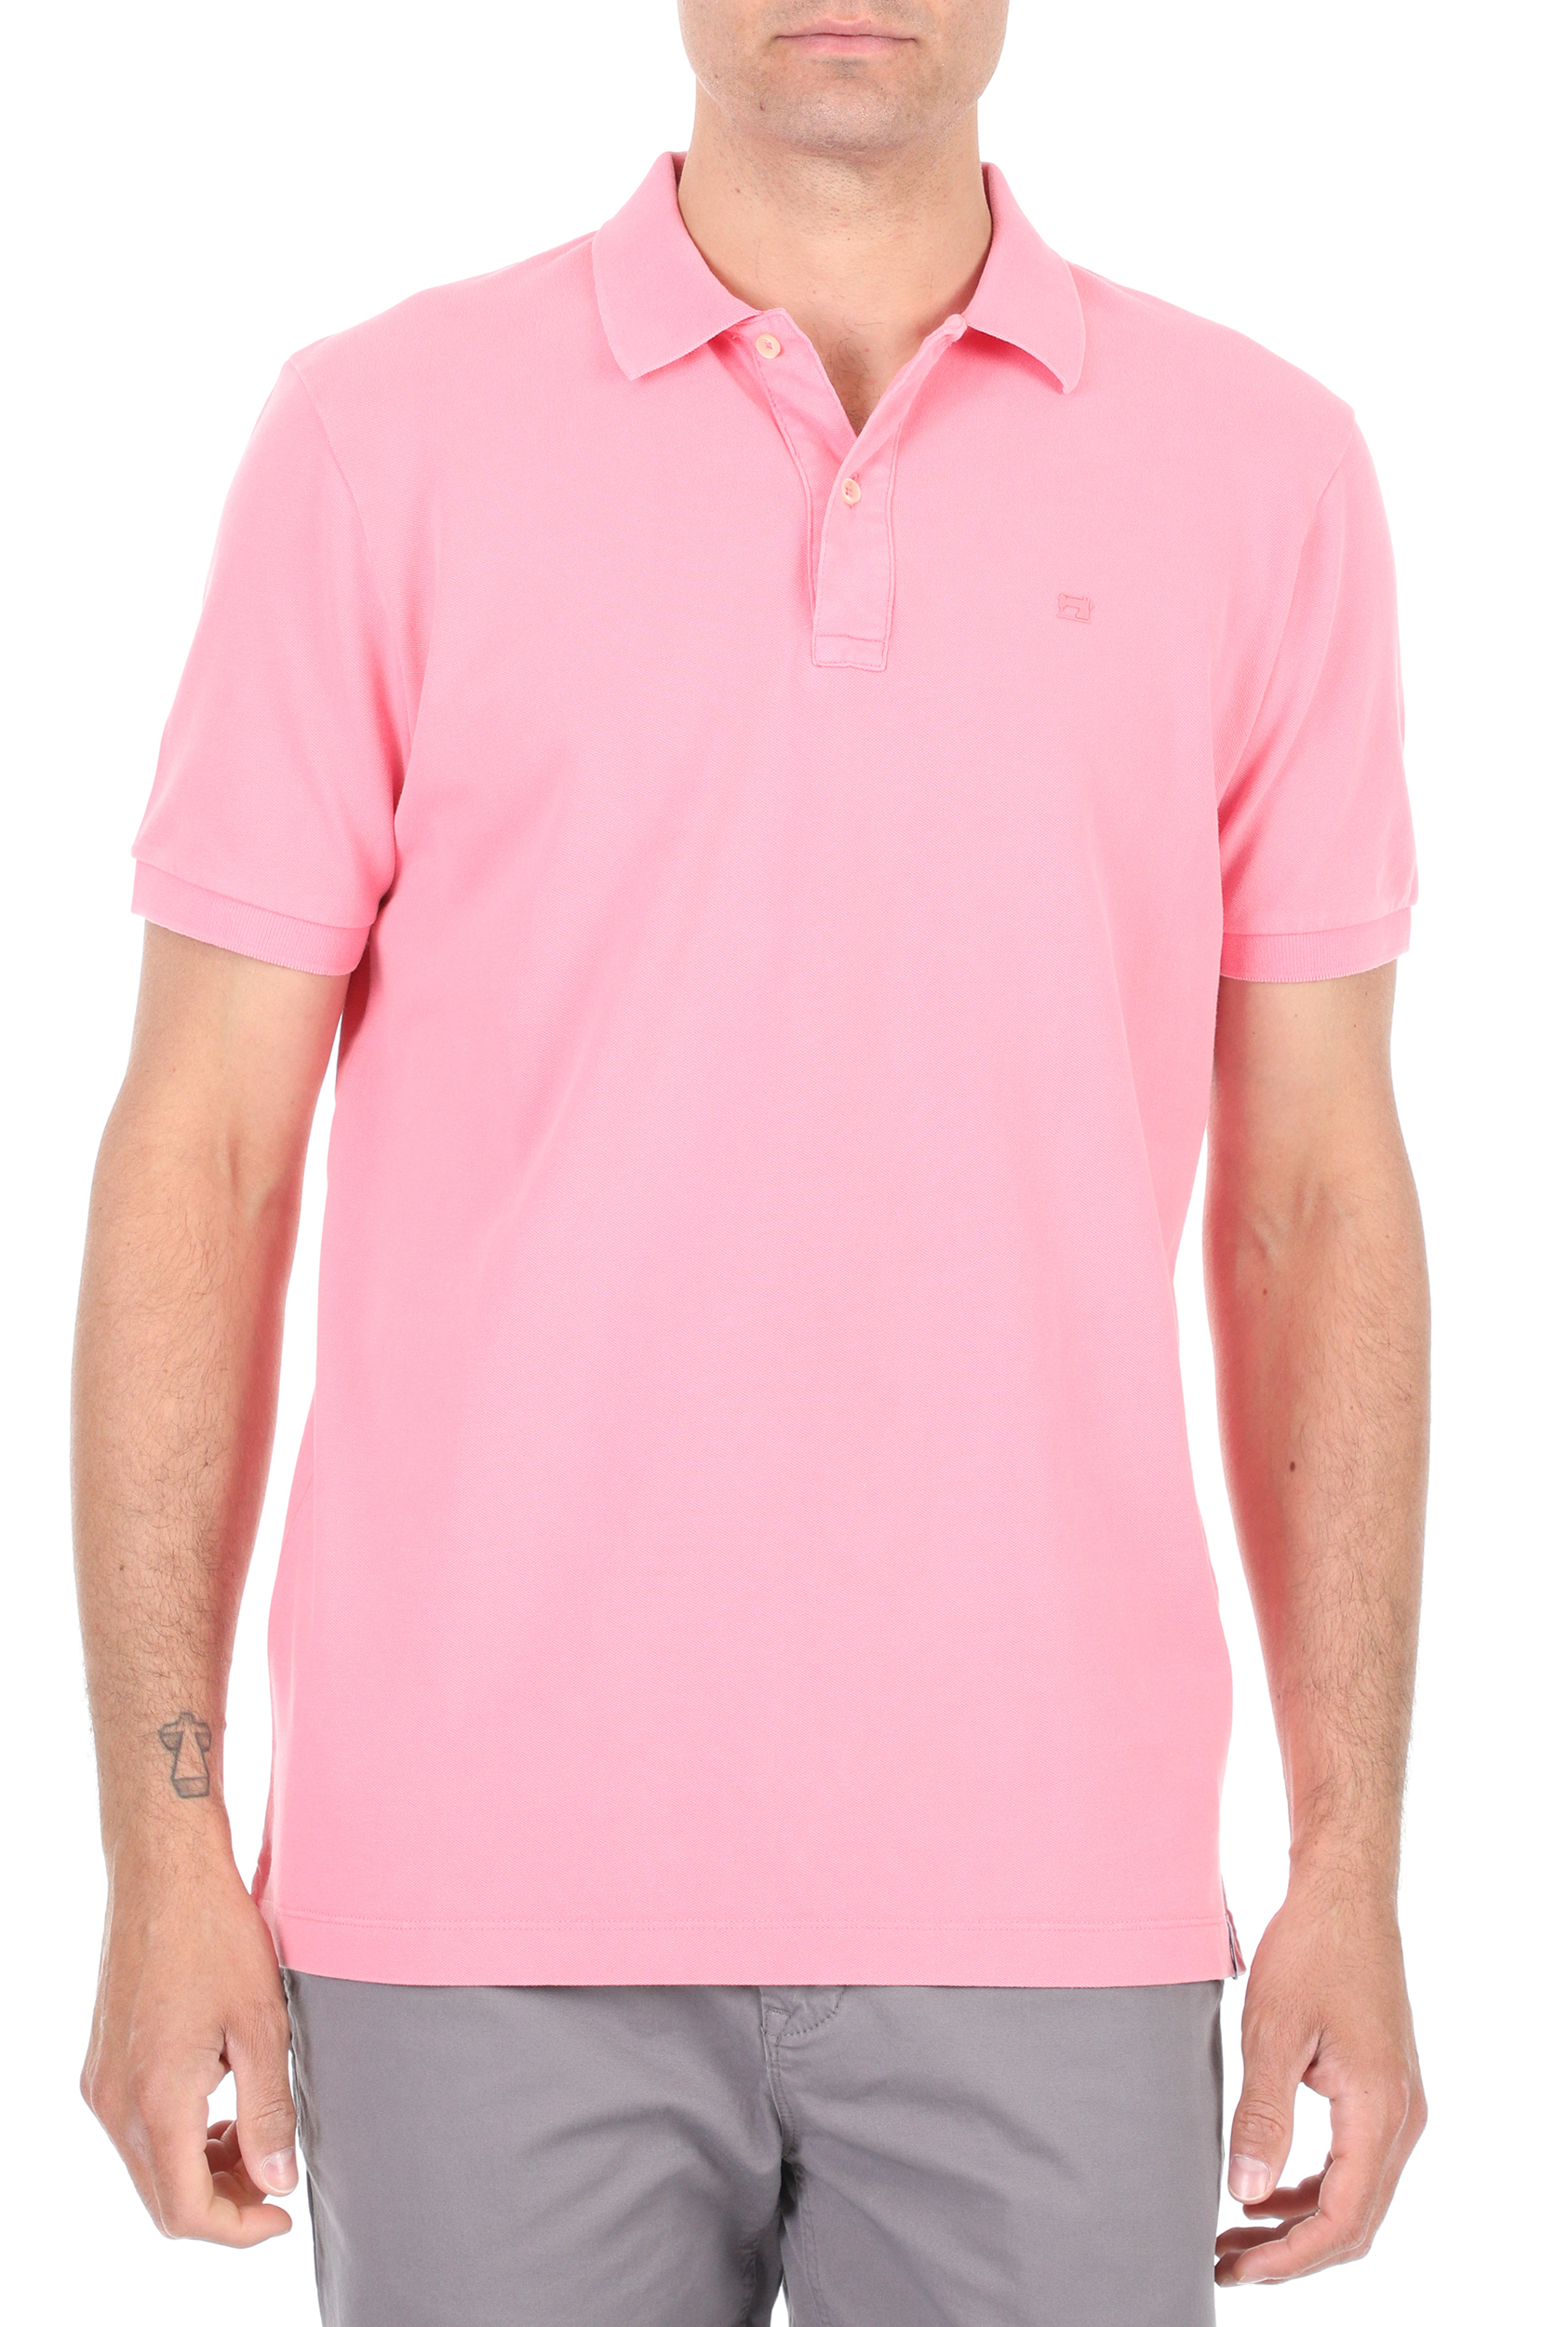 Ανδρικά/Ρούχα/Μπλούζες/Πόλο SCOTCH & SODA - Ανδρική polo μπλούζα SCOTCH & SODA ροζ